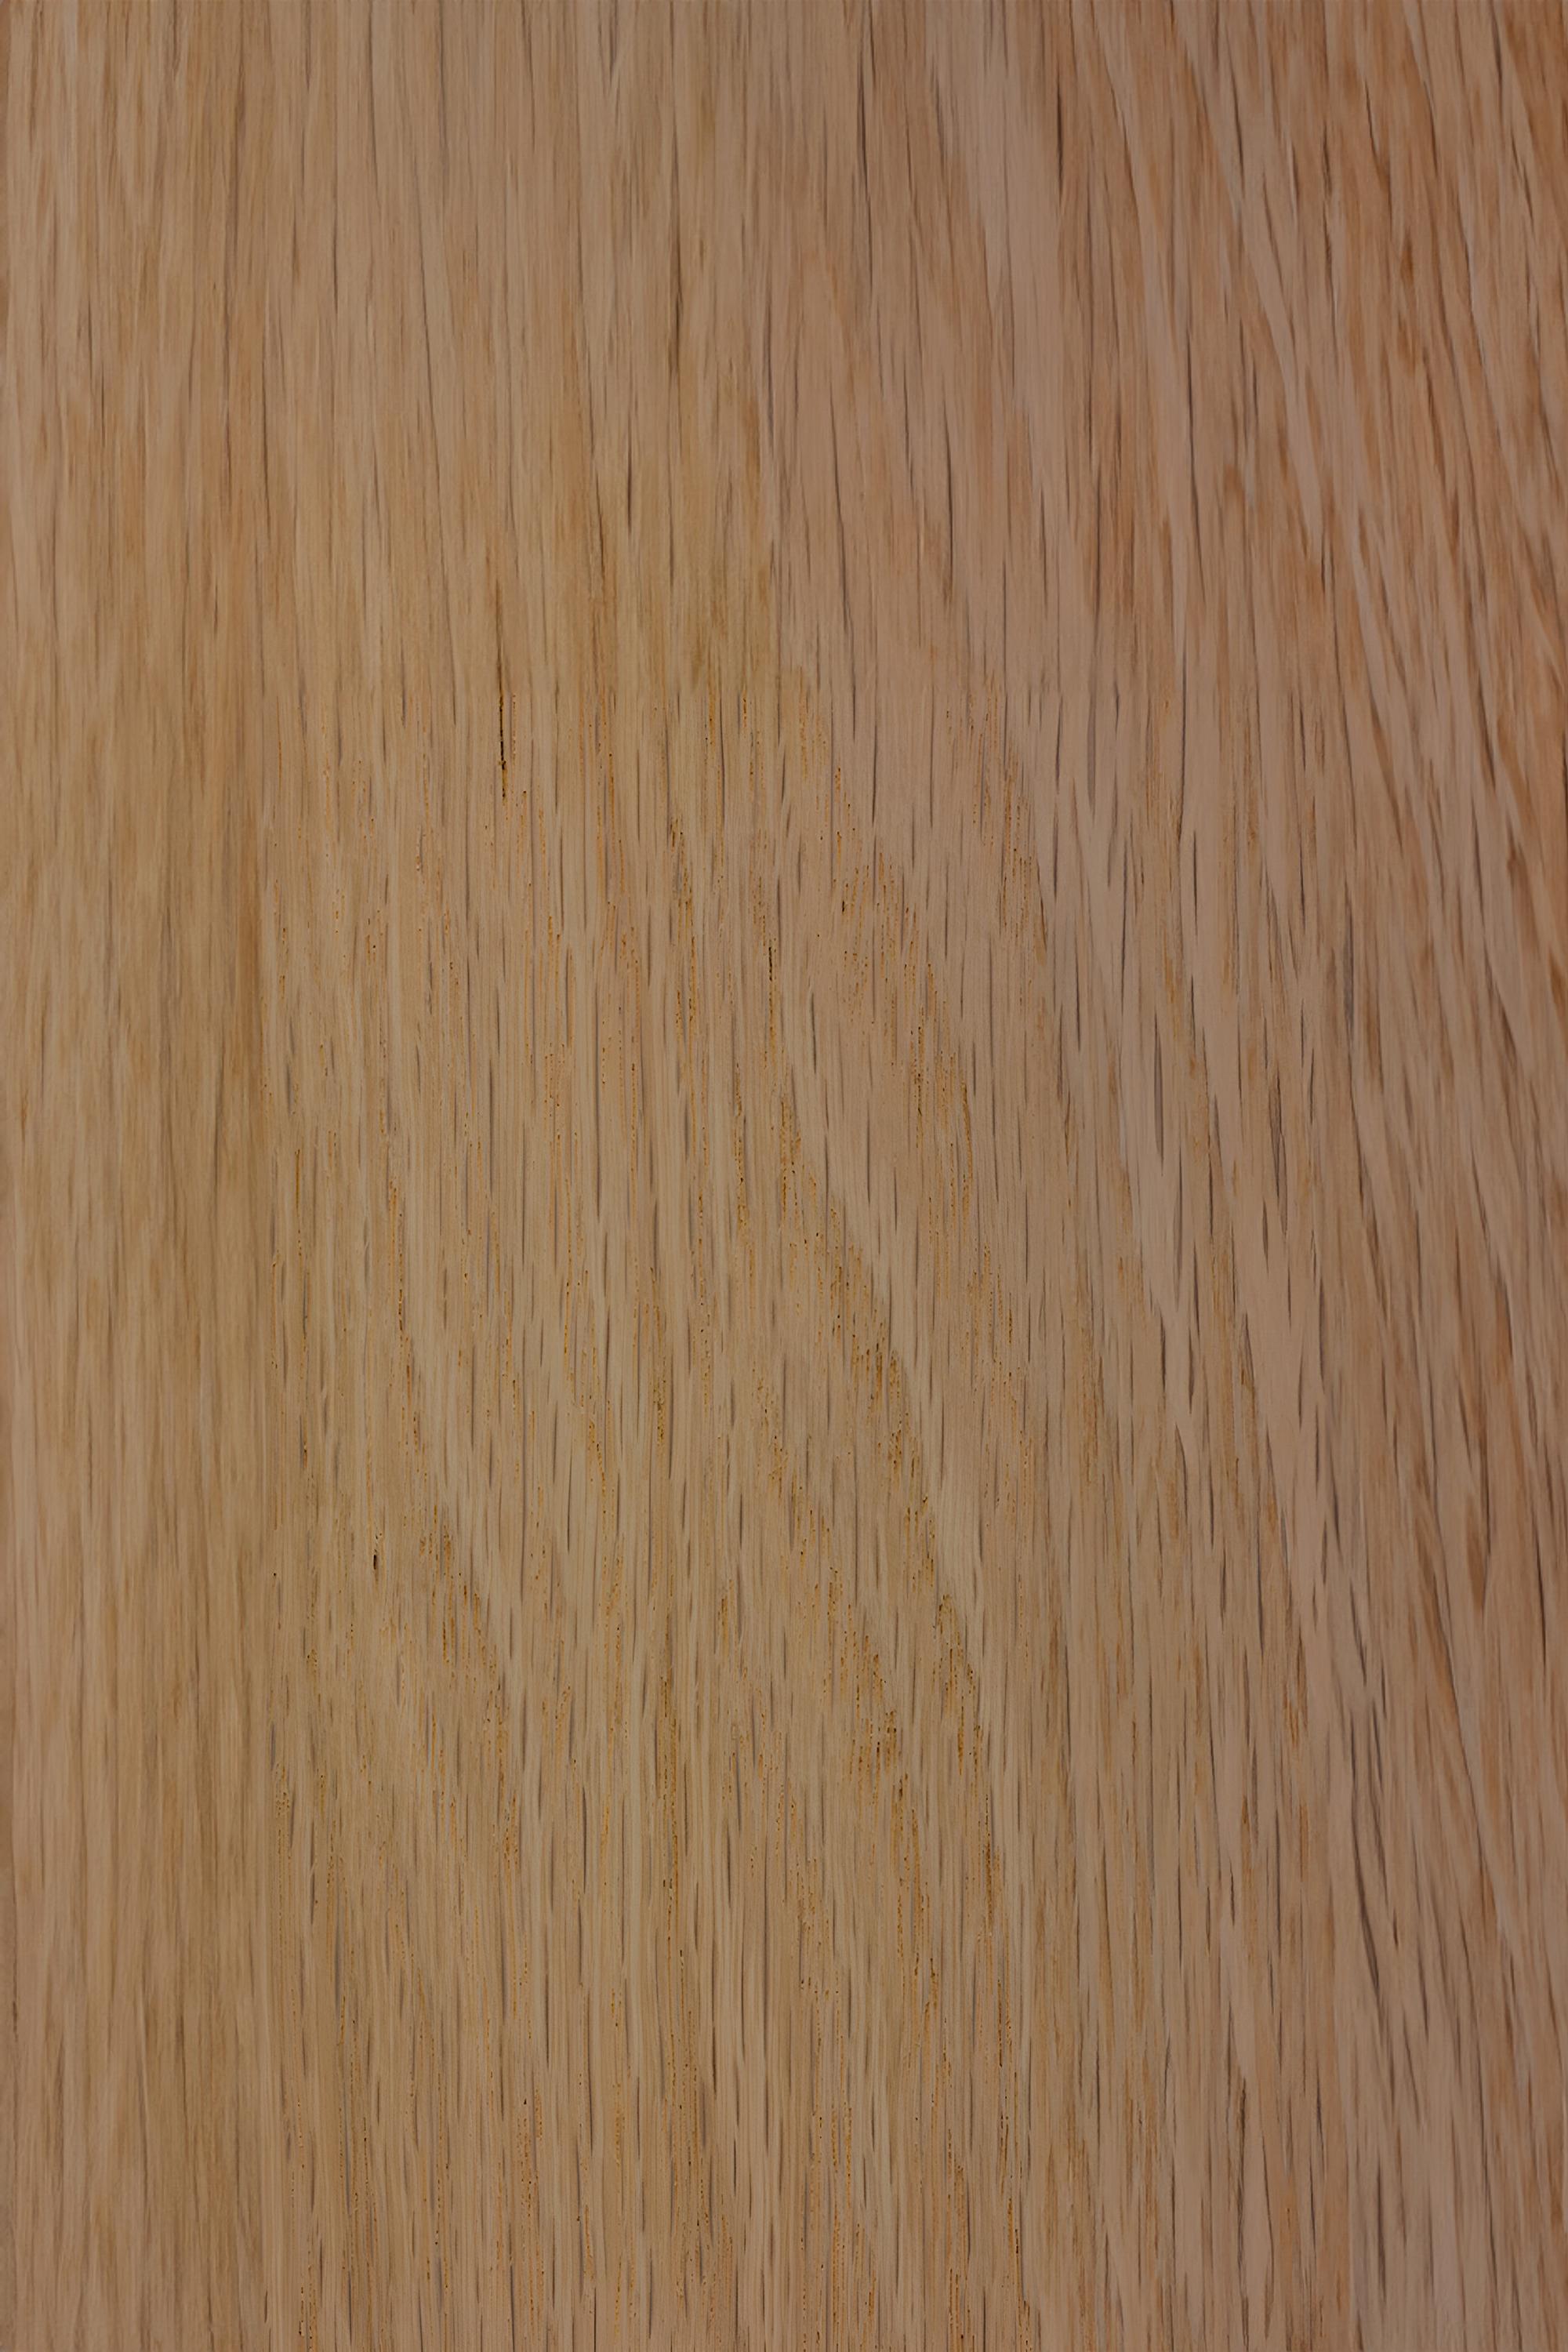 Hardwood NONO Elefante Sideboard 07, Robust Oak, Modernist Detail For Sale